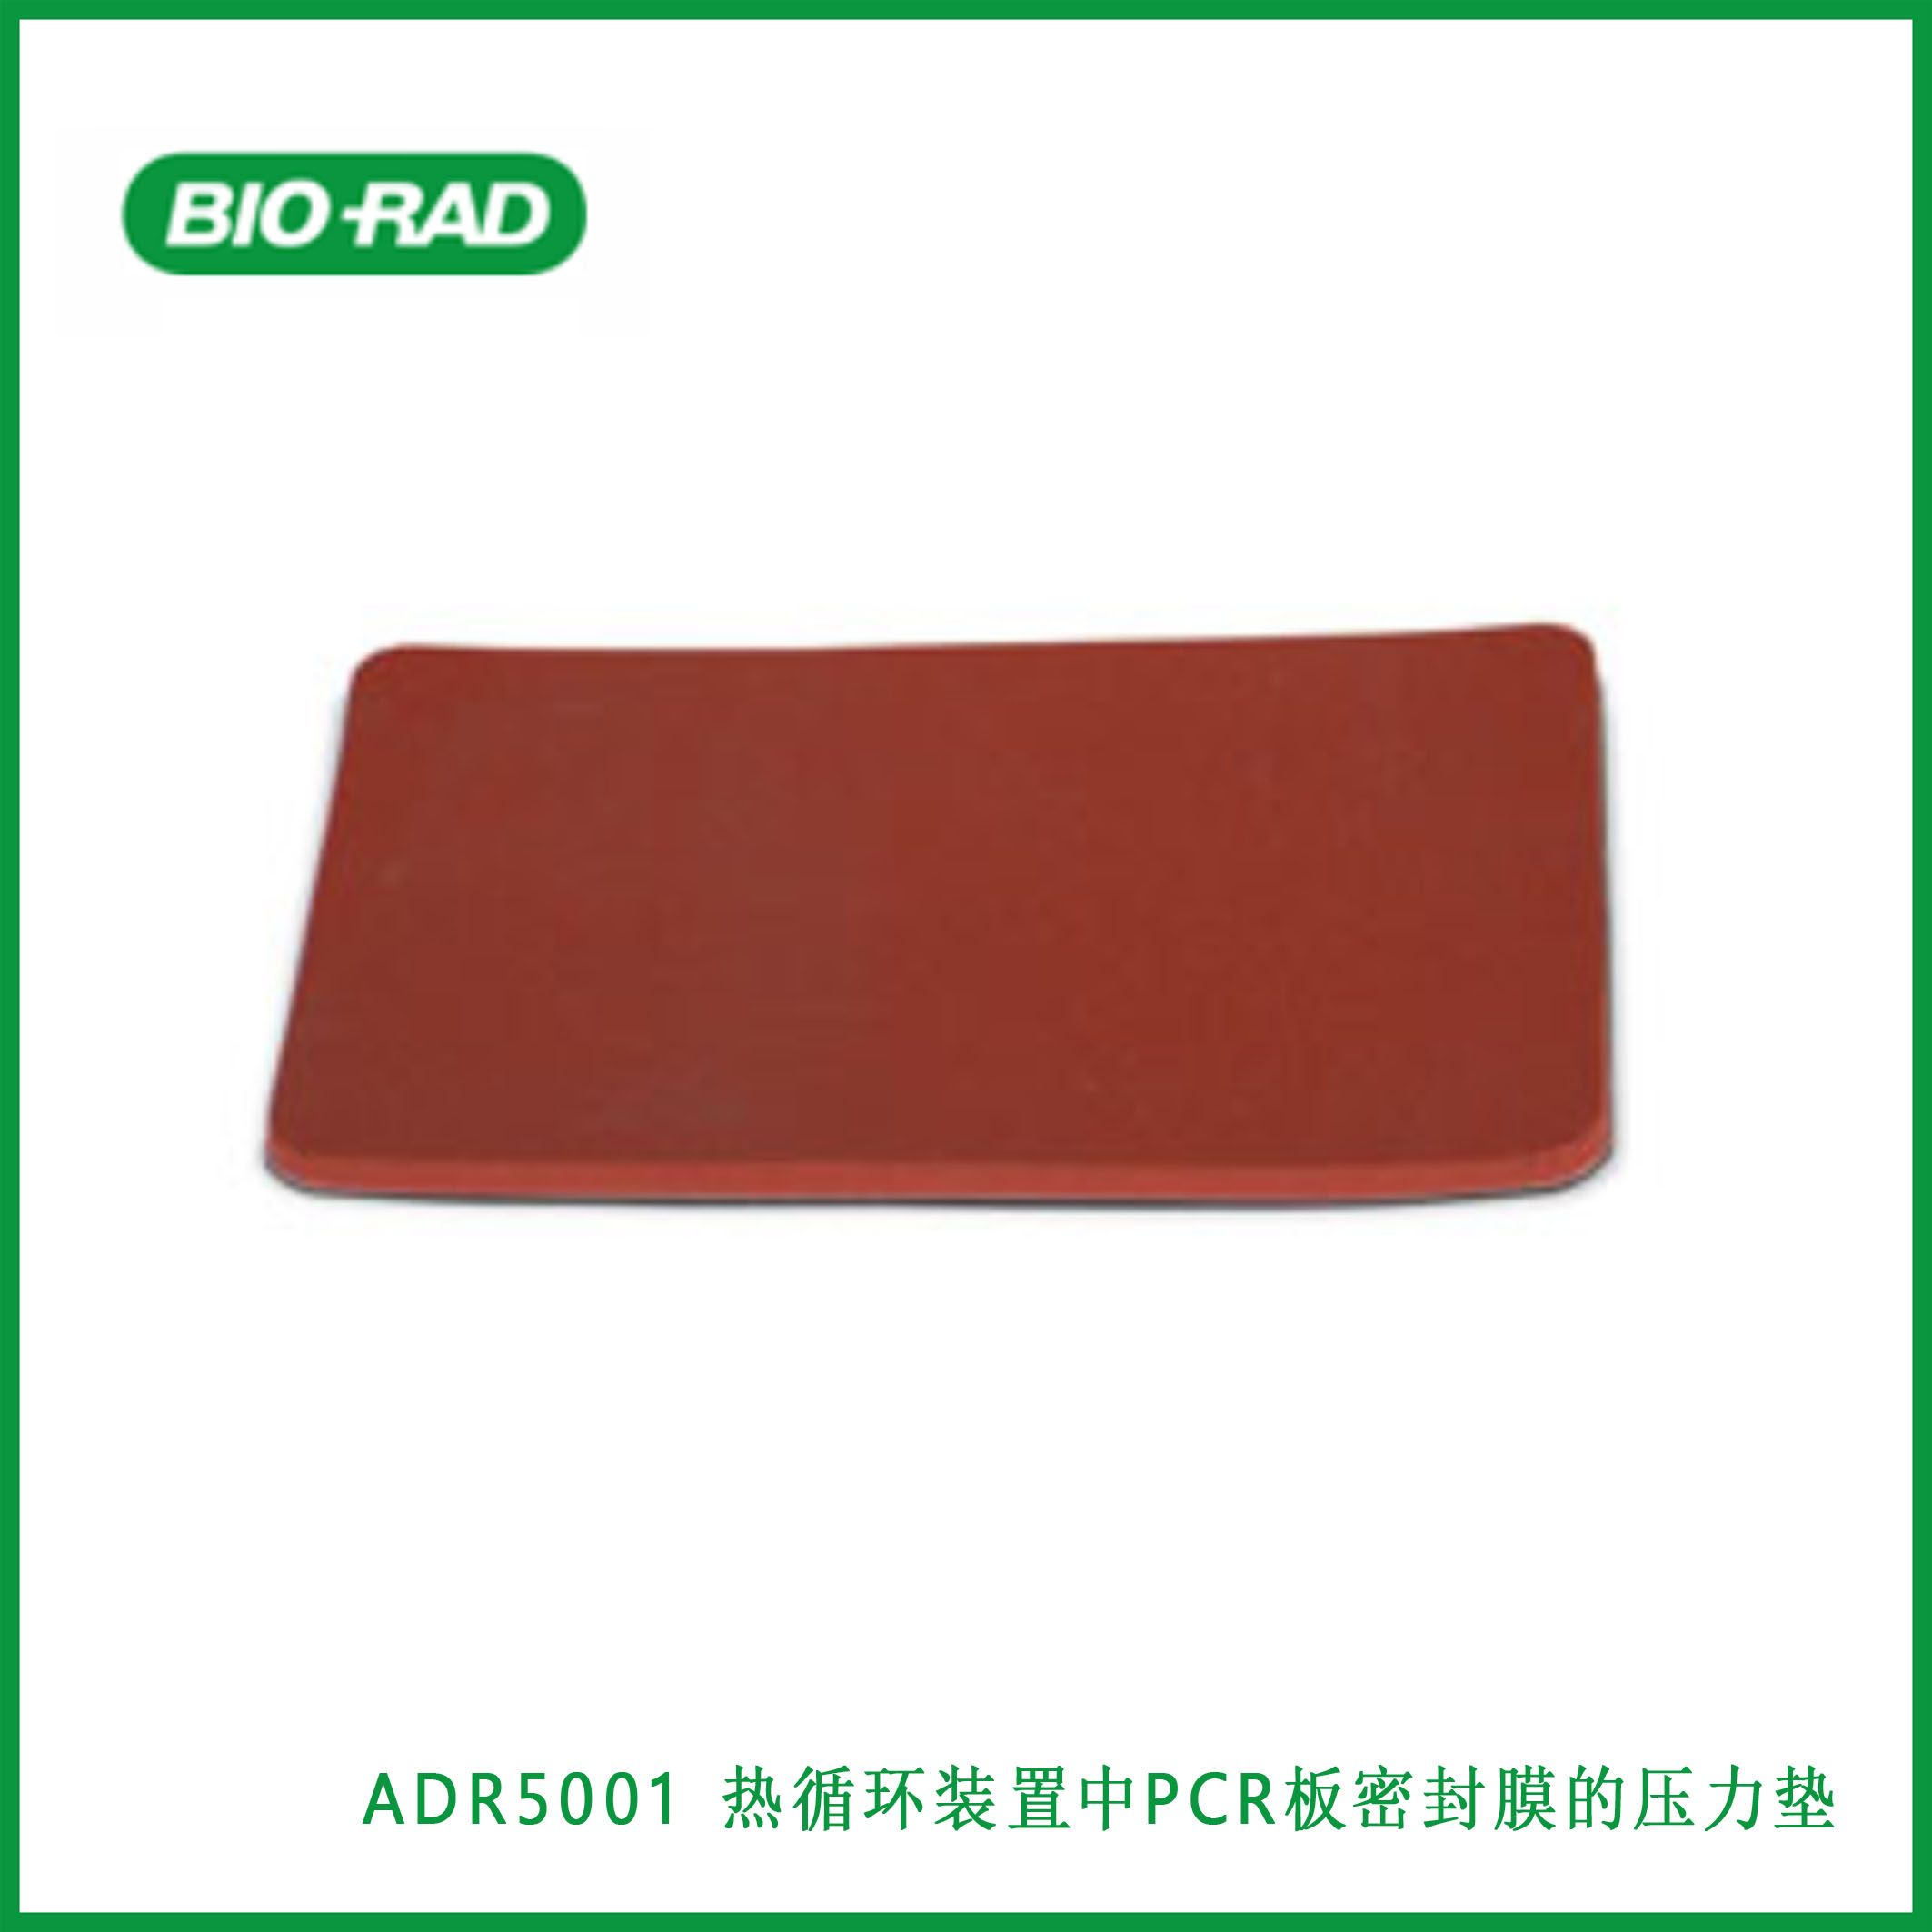 伯乐Bio-RadADR5001Pressure Pad for Sealing Film on PCR Plates in thermal cyclers - ADR5001, 热循环装置中PCR板密封膜的压力垫，现货